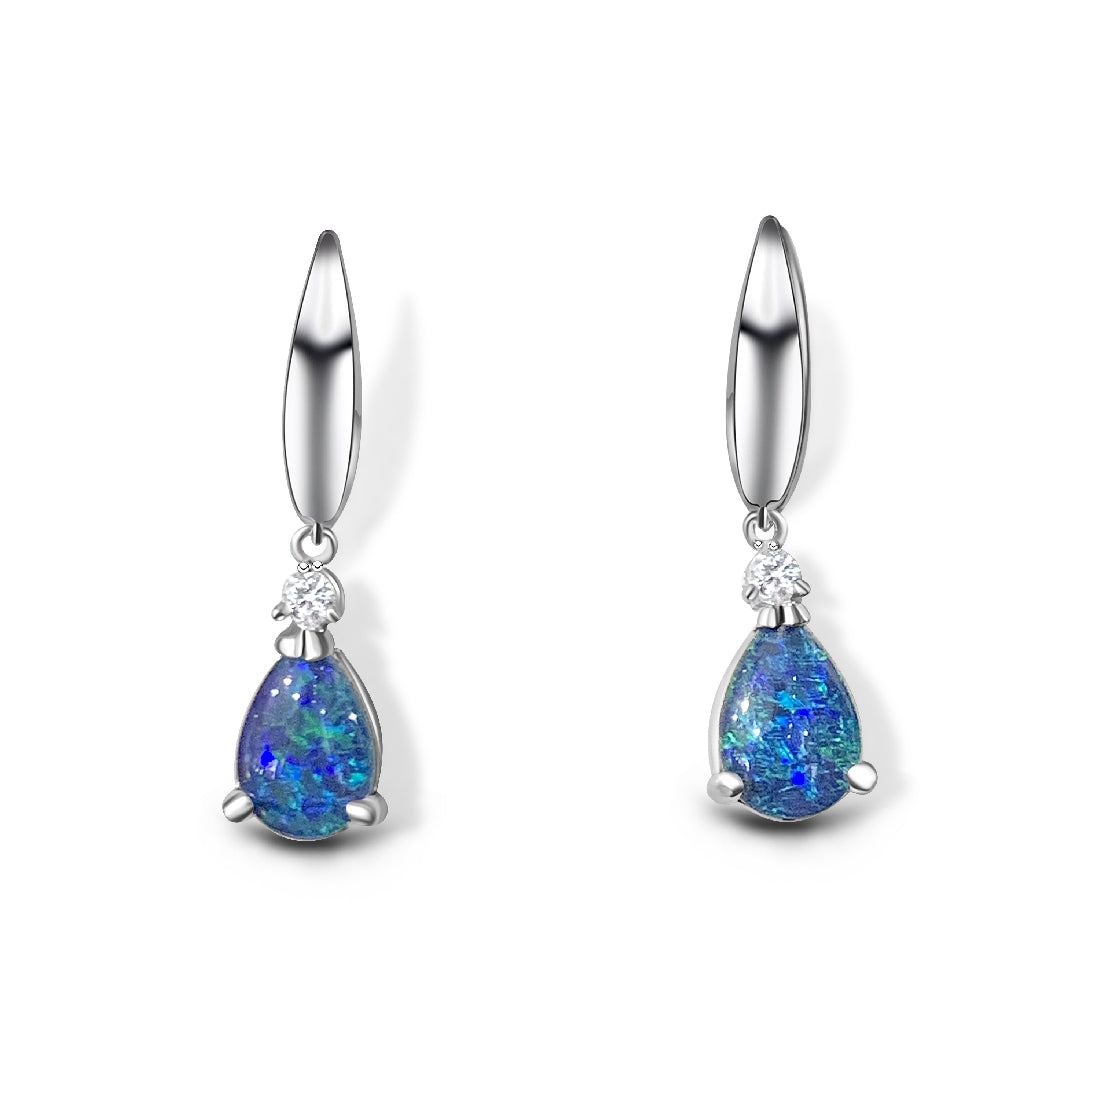 Sterling Silver 9x6mm pear shape Opal triplets dangling earrings with cubic zirconia - Masterpiece Jewellery Opal & Gems Sydney Australia | Online Shop